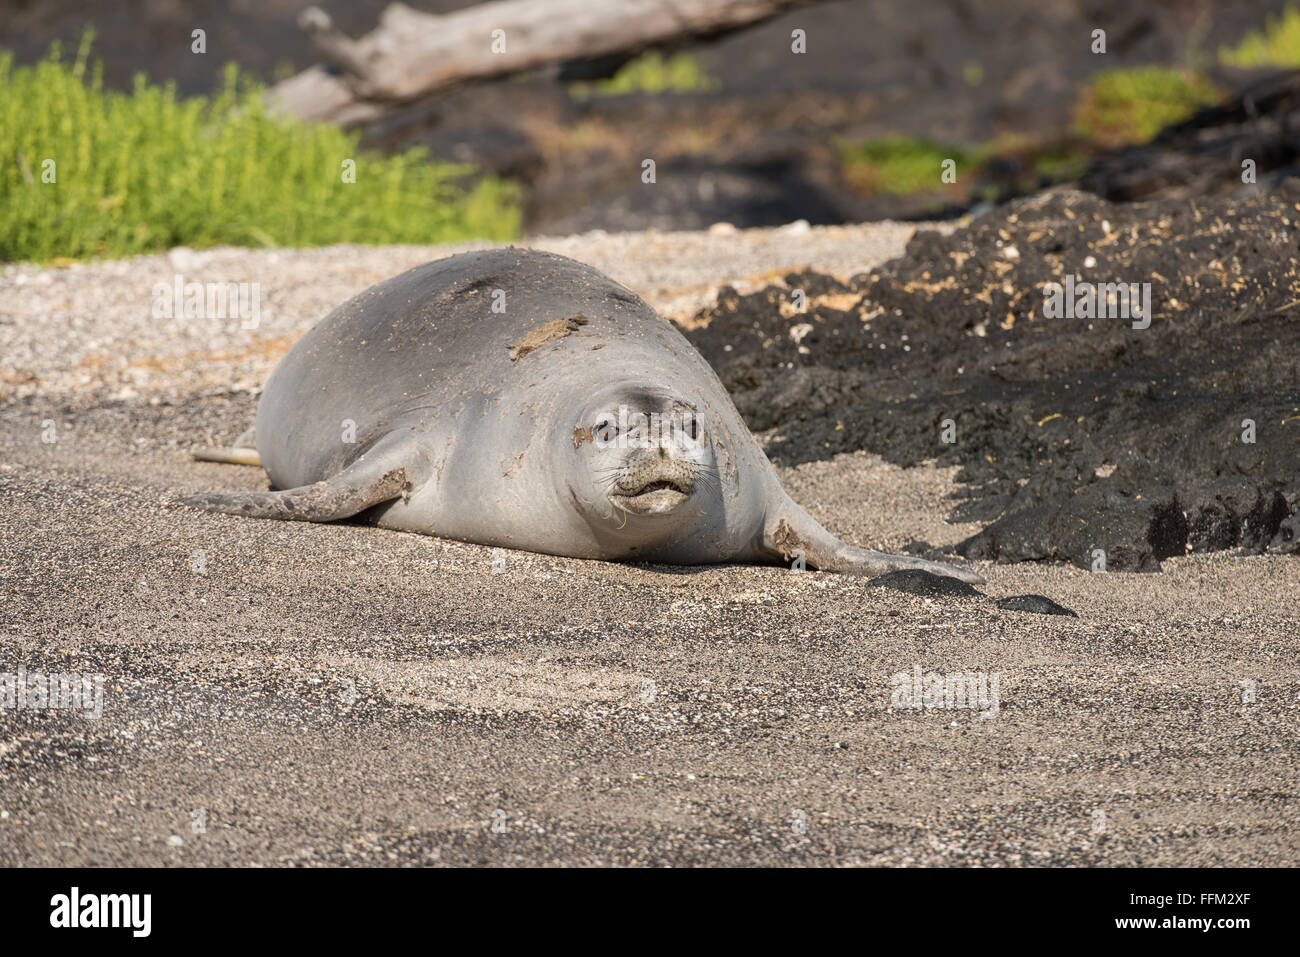 Hawaiian monk seal walking on beach, Big Island, Hawaii Stock Photo